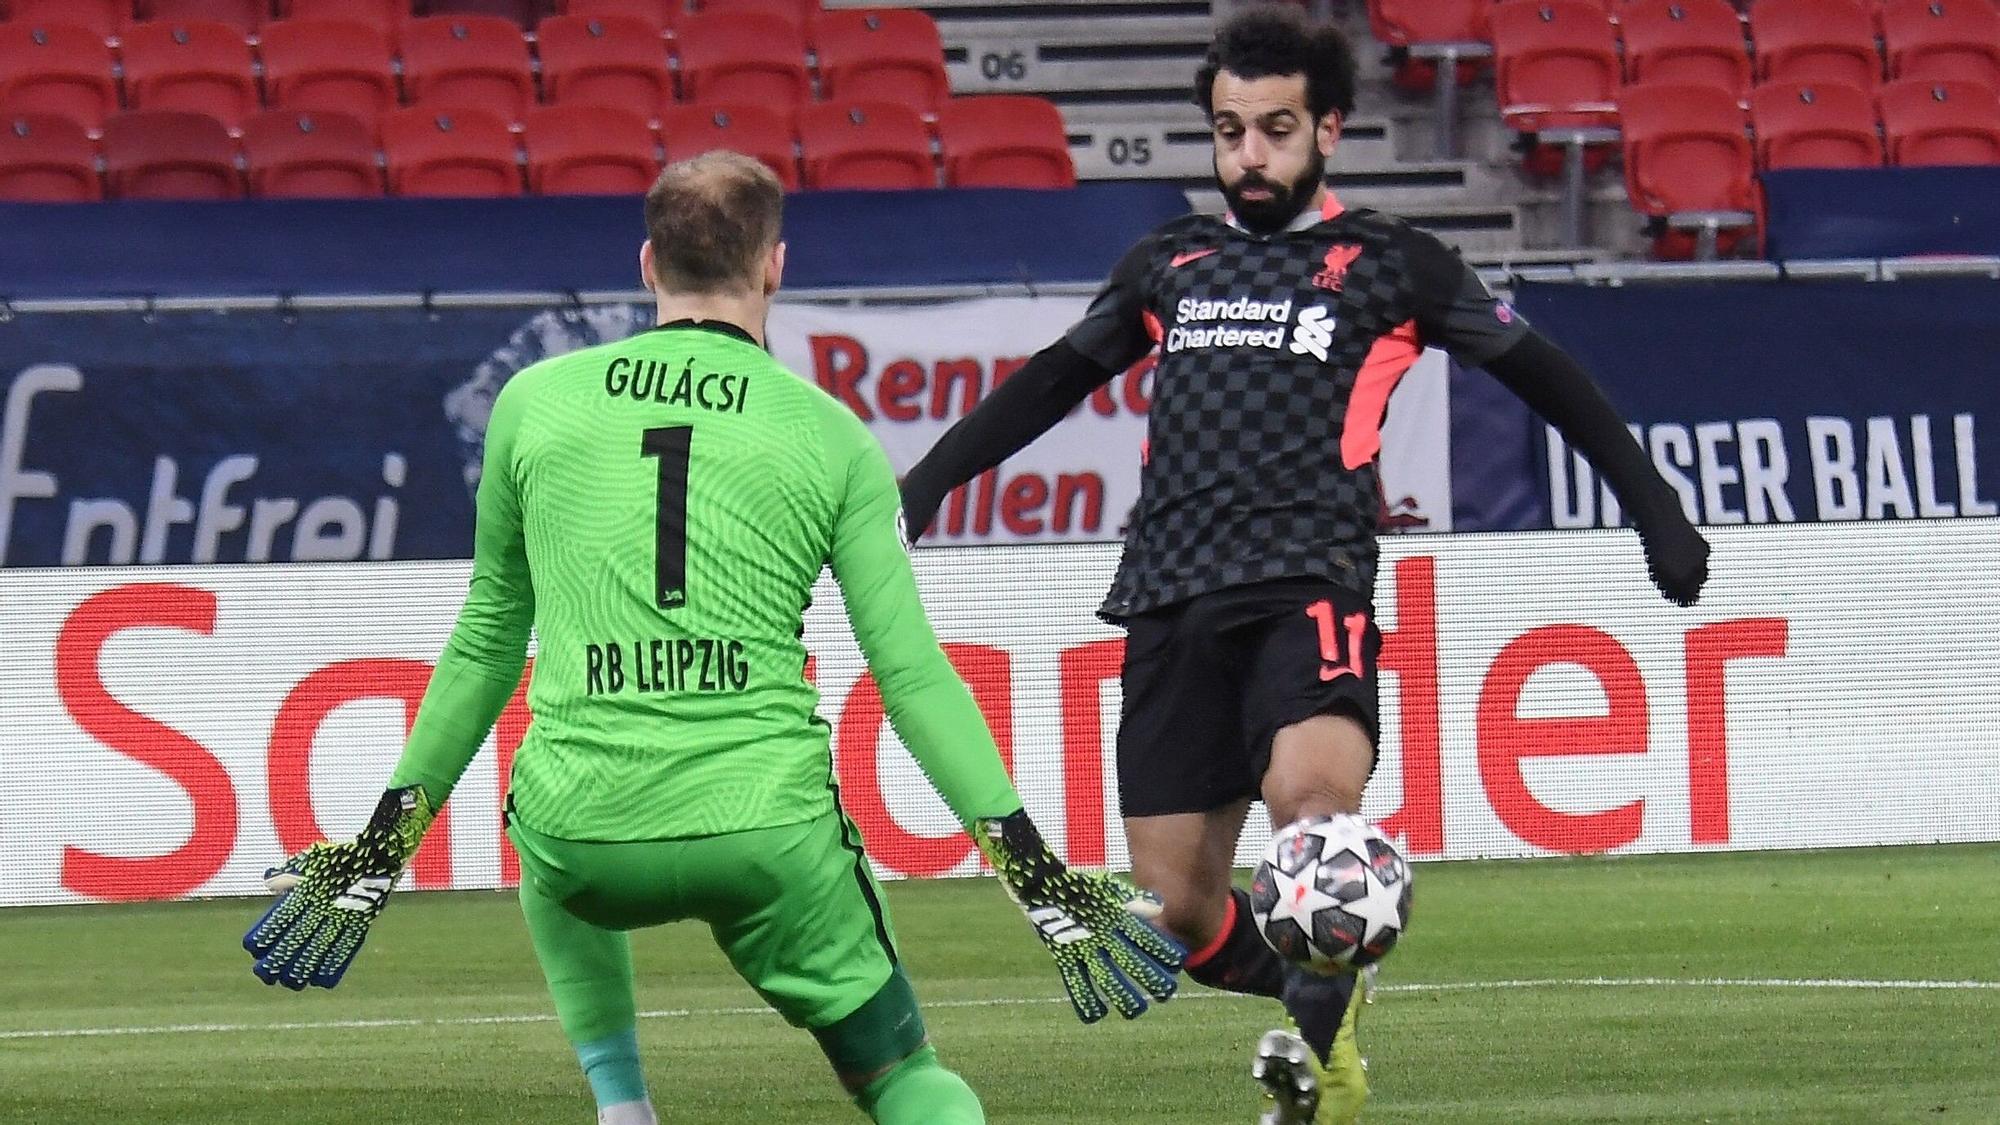 Salah intenta superar al portero Gulacsi.